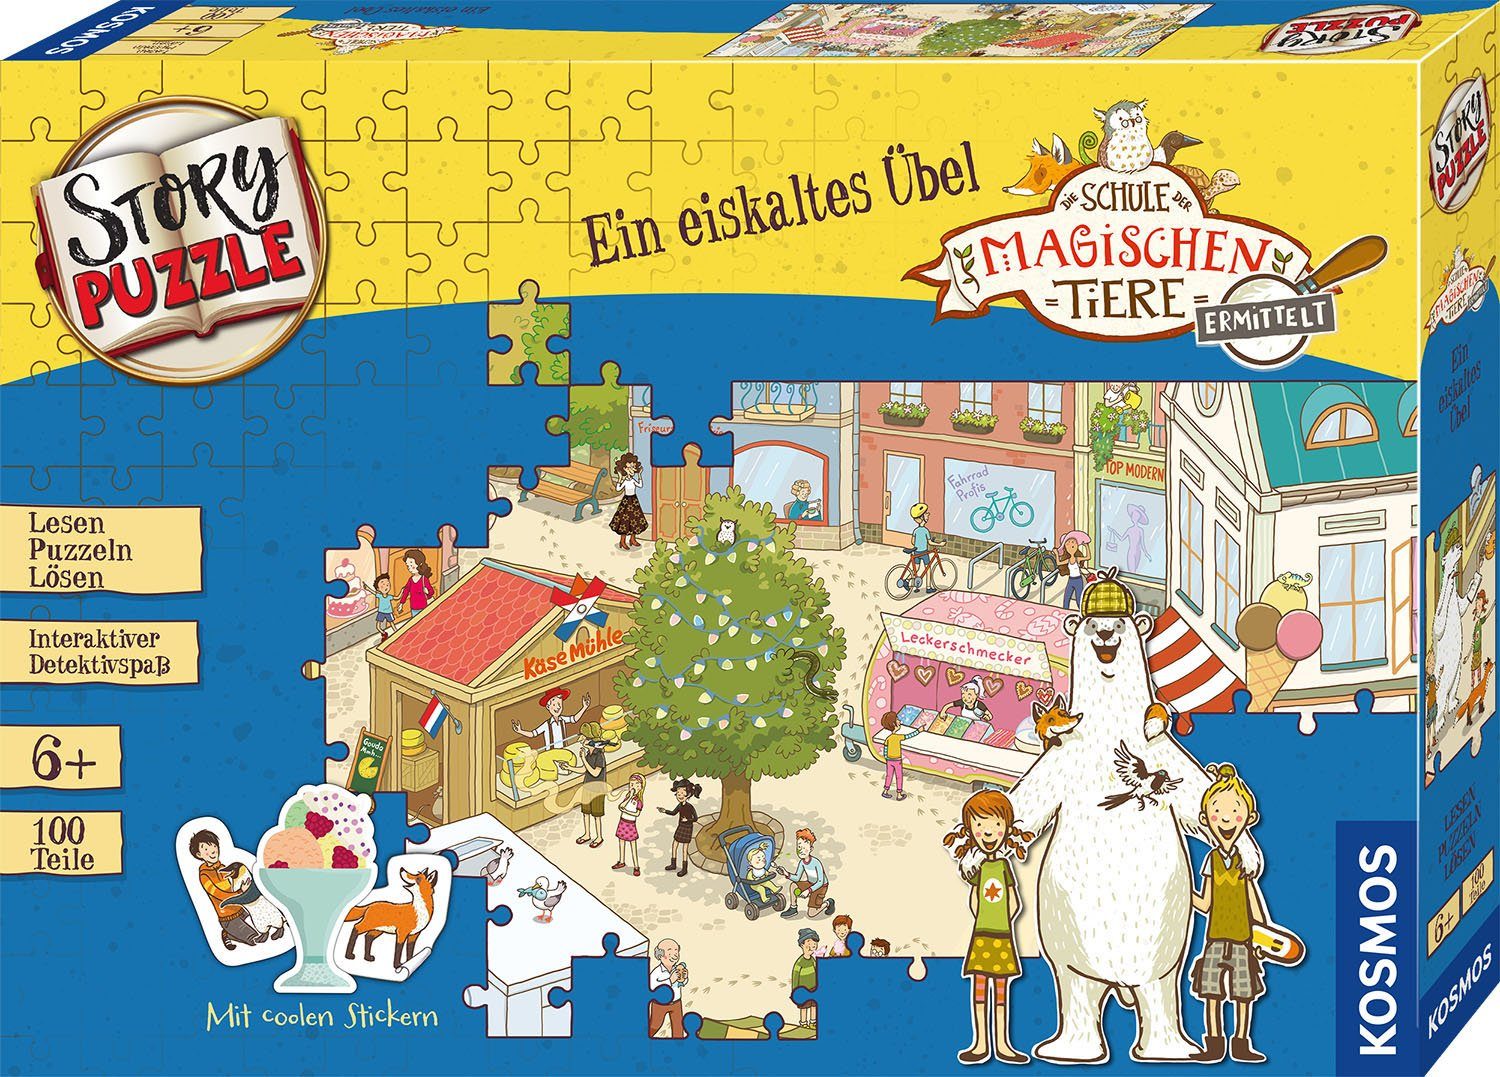 Storypuzzle, in Puzzleteile, ermittelt, der 100 Puzzle Ein magischen Schule Übel, Made eiskaltes Germany Tiere Kosmos